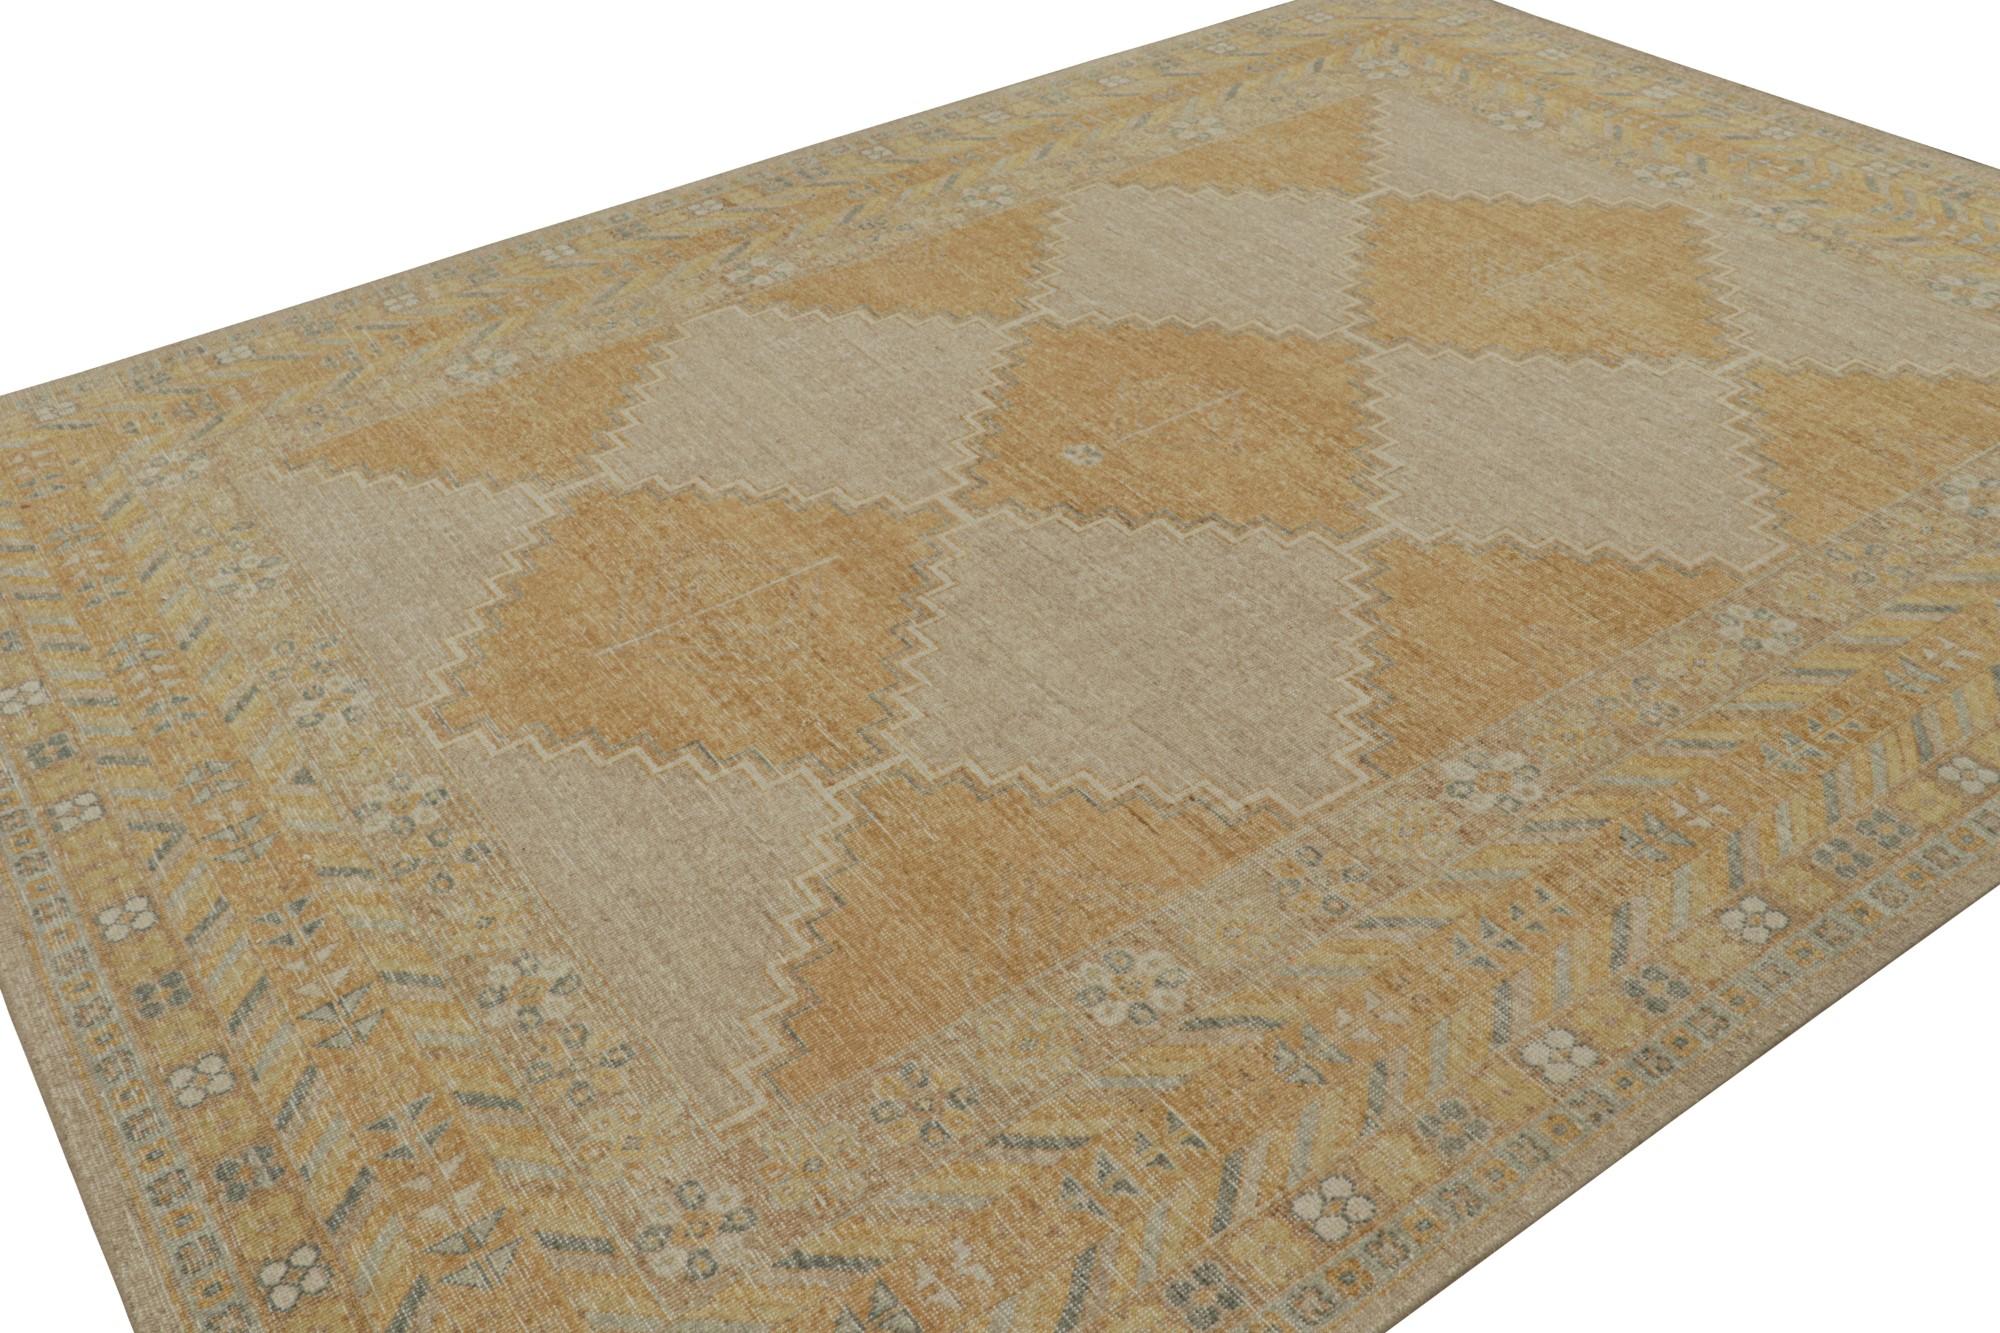 Dieser 9x12 große Teppich ist eine großartige Ergänzung der Homage Collection'S von Rug & Kilim. Das aus Wolle handgeknüpfte Design besticht durch geometrische Muster und eine reiche Farbpalette aus Beige/Braun, Gold und Blau. 

Über das Design: